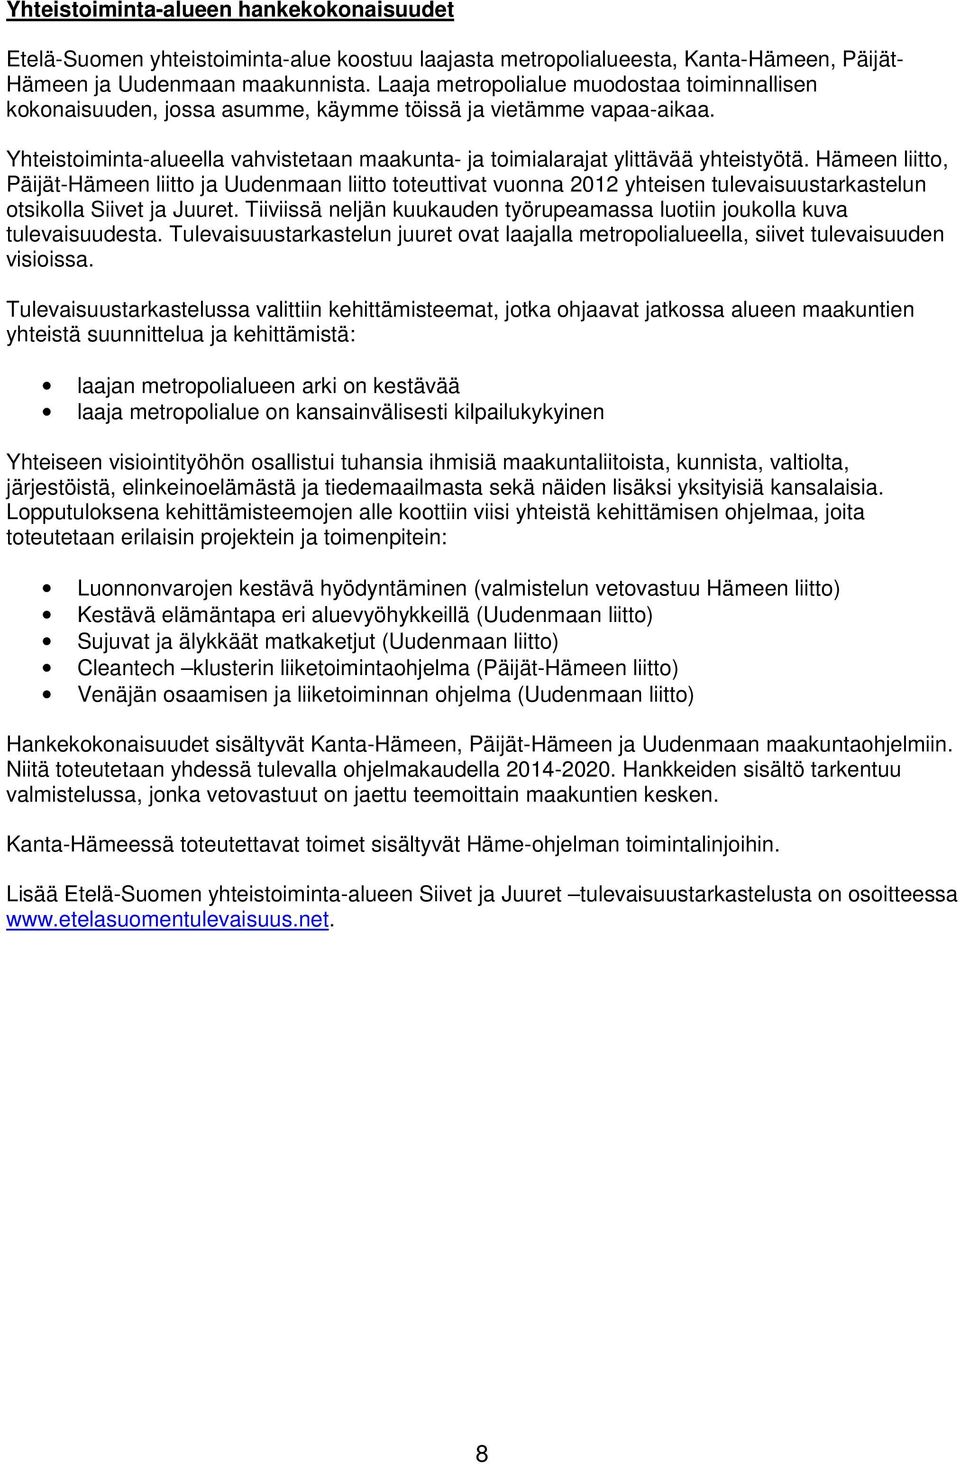 Hämeen liitto, Päijät-Hämeen liitto ja Uudenmaan liitto toteuttivat vuonna 2012 yhteisen tulevaisuustarkastelun otsikolla Siivet ja Juuret.